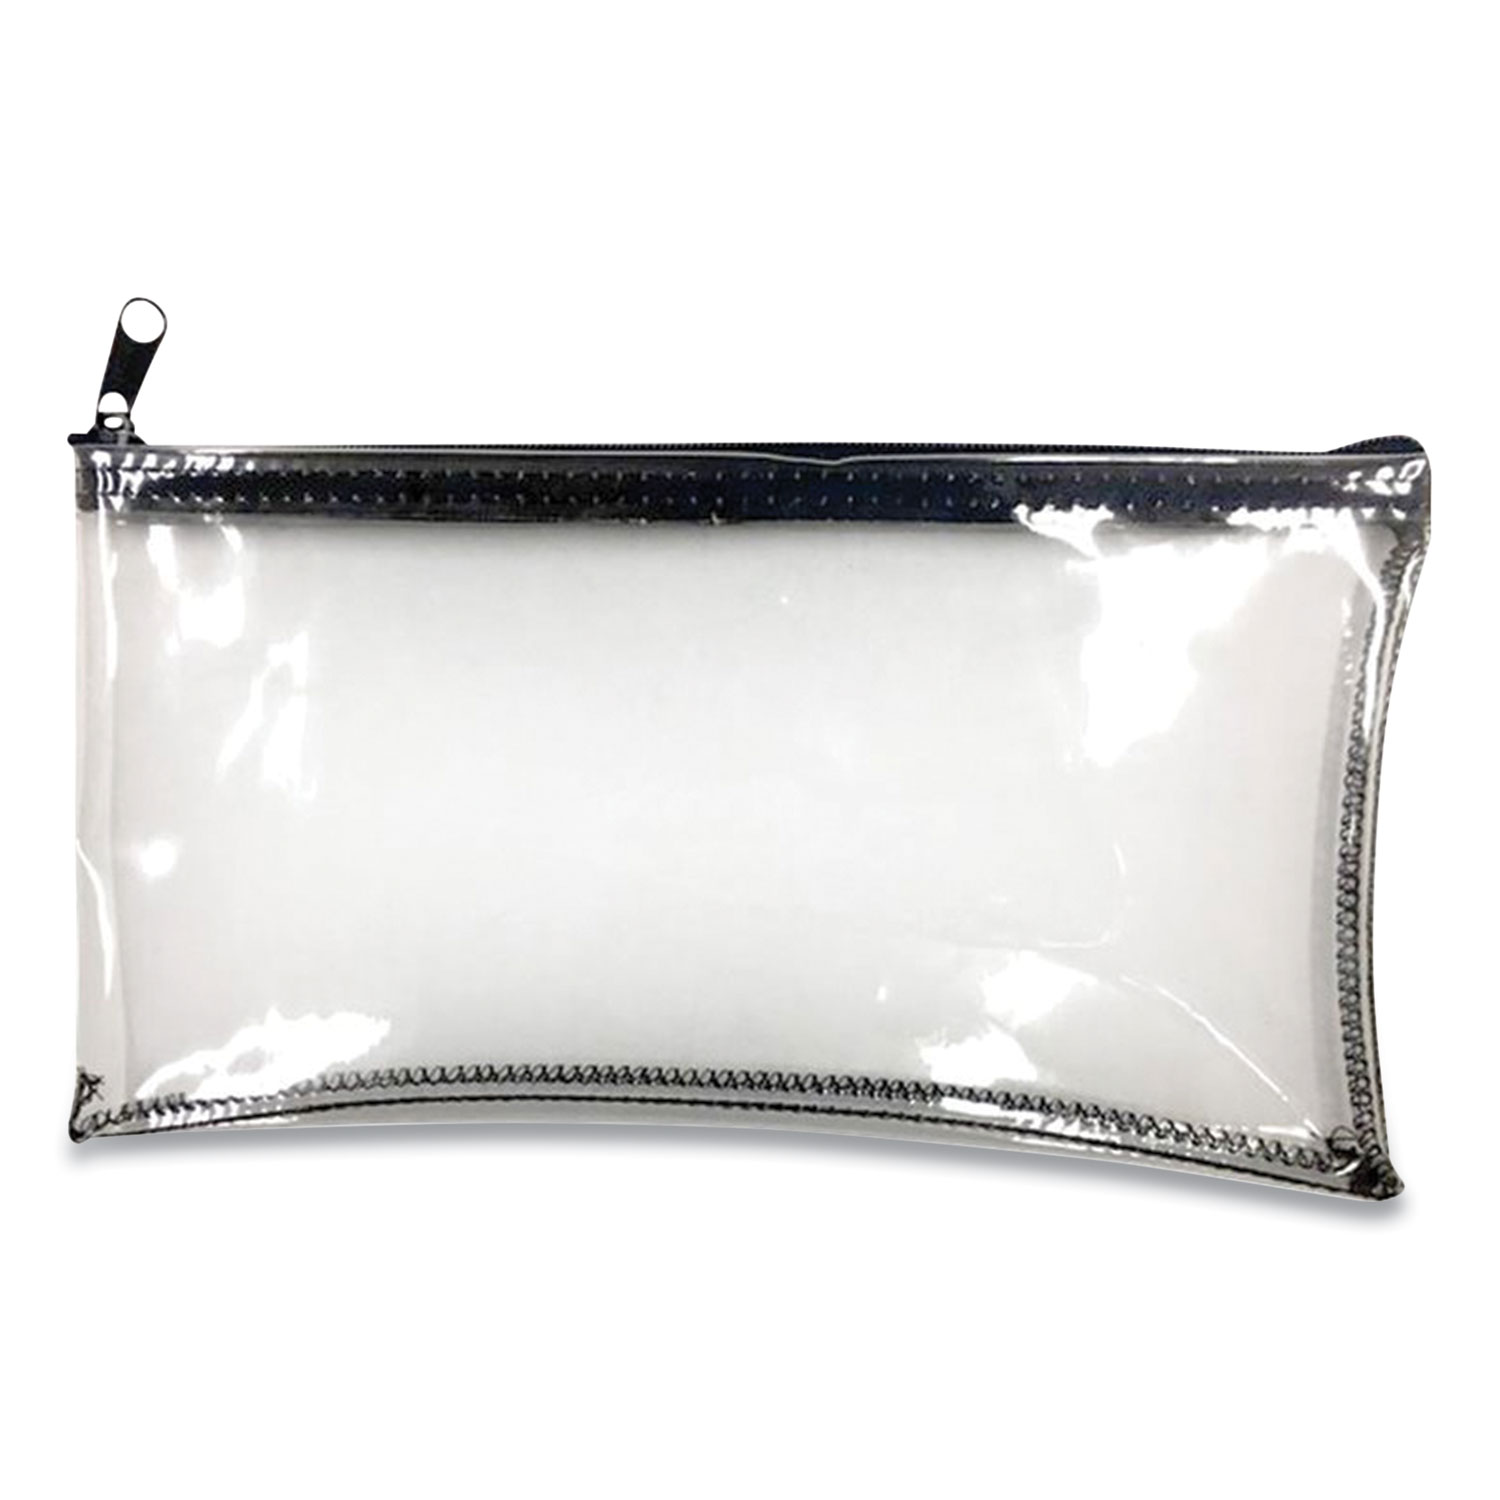  CONTROLTEK 530977 Multipurpose Zipper Bags, 11 x 6, Clear (CNK24421420) 